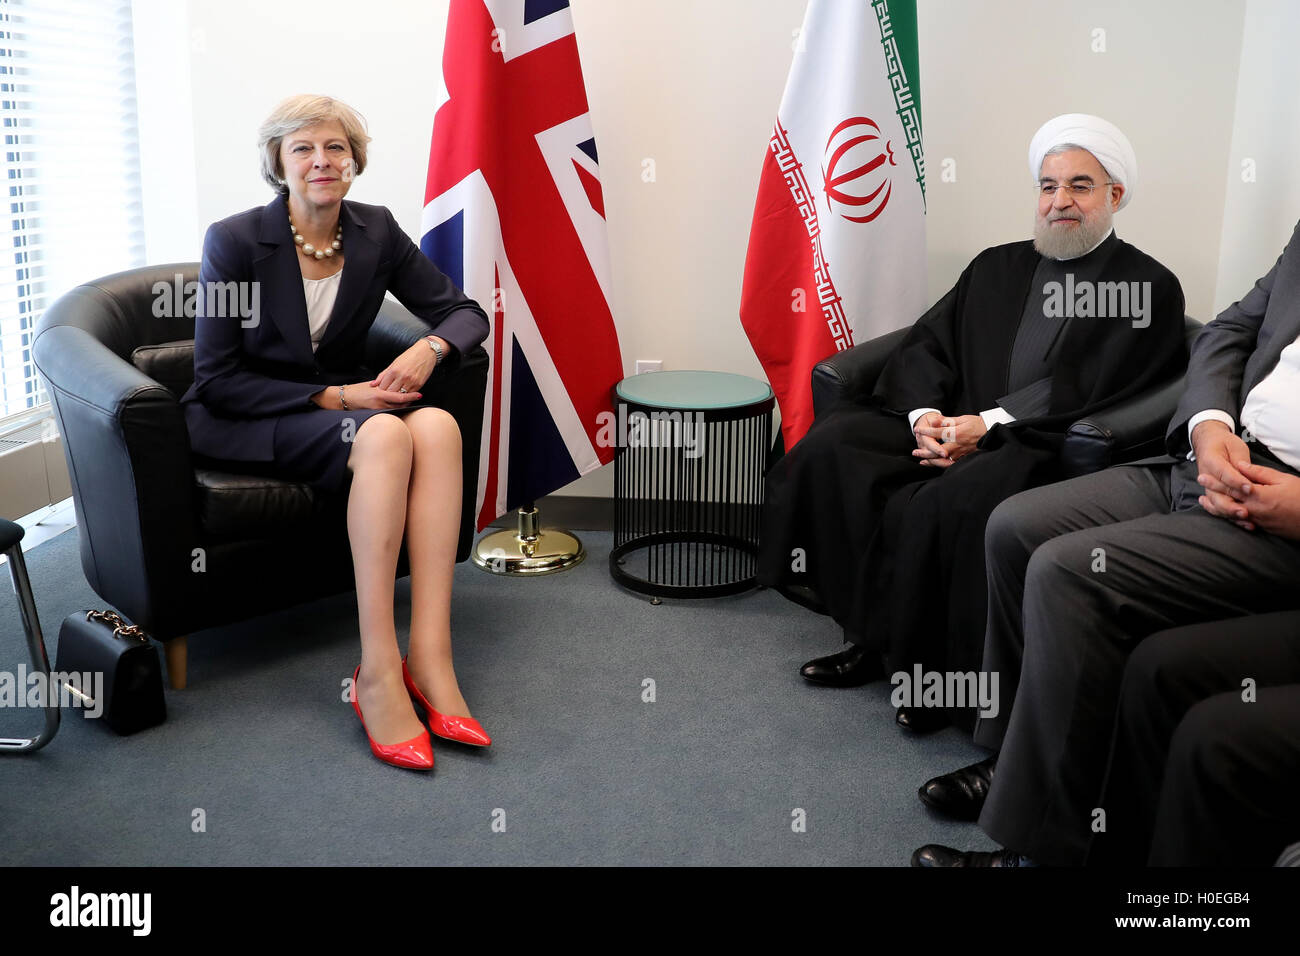 Premier ministre Theresa mai et le président de l'Iran, Hassan Rohani parce qu'ils répondent avant une réunion bilatérale au cours de l'Assemblée générale des Nations Unies à New York. Banque D'Images